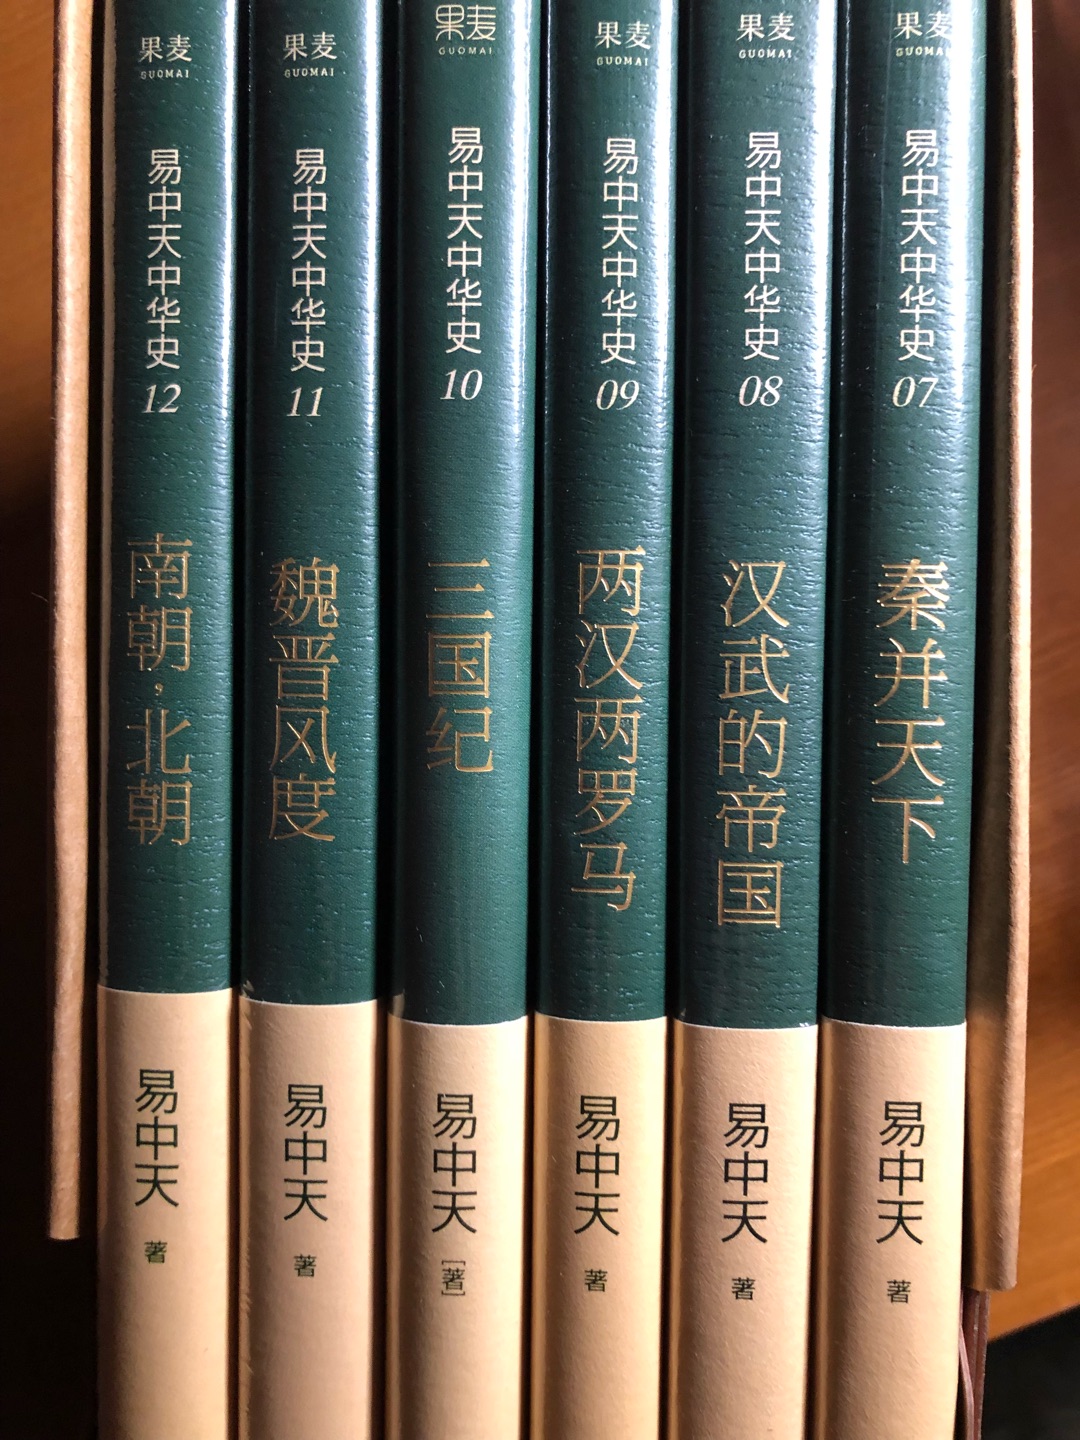 很喜欢易中天老师讲述的中华史，听他旁征博引，娓娓道来真是一种享受。书的装帧印刷都很精美，值得收藏和慢慢品味。